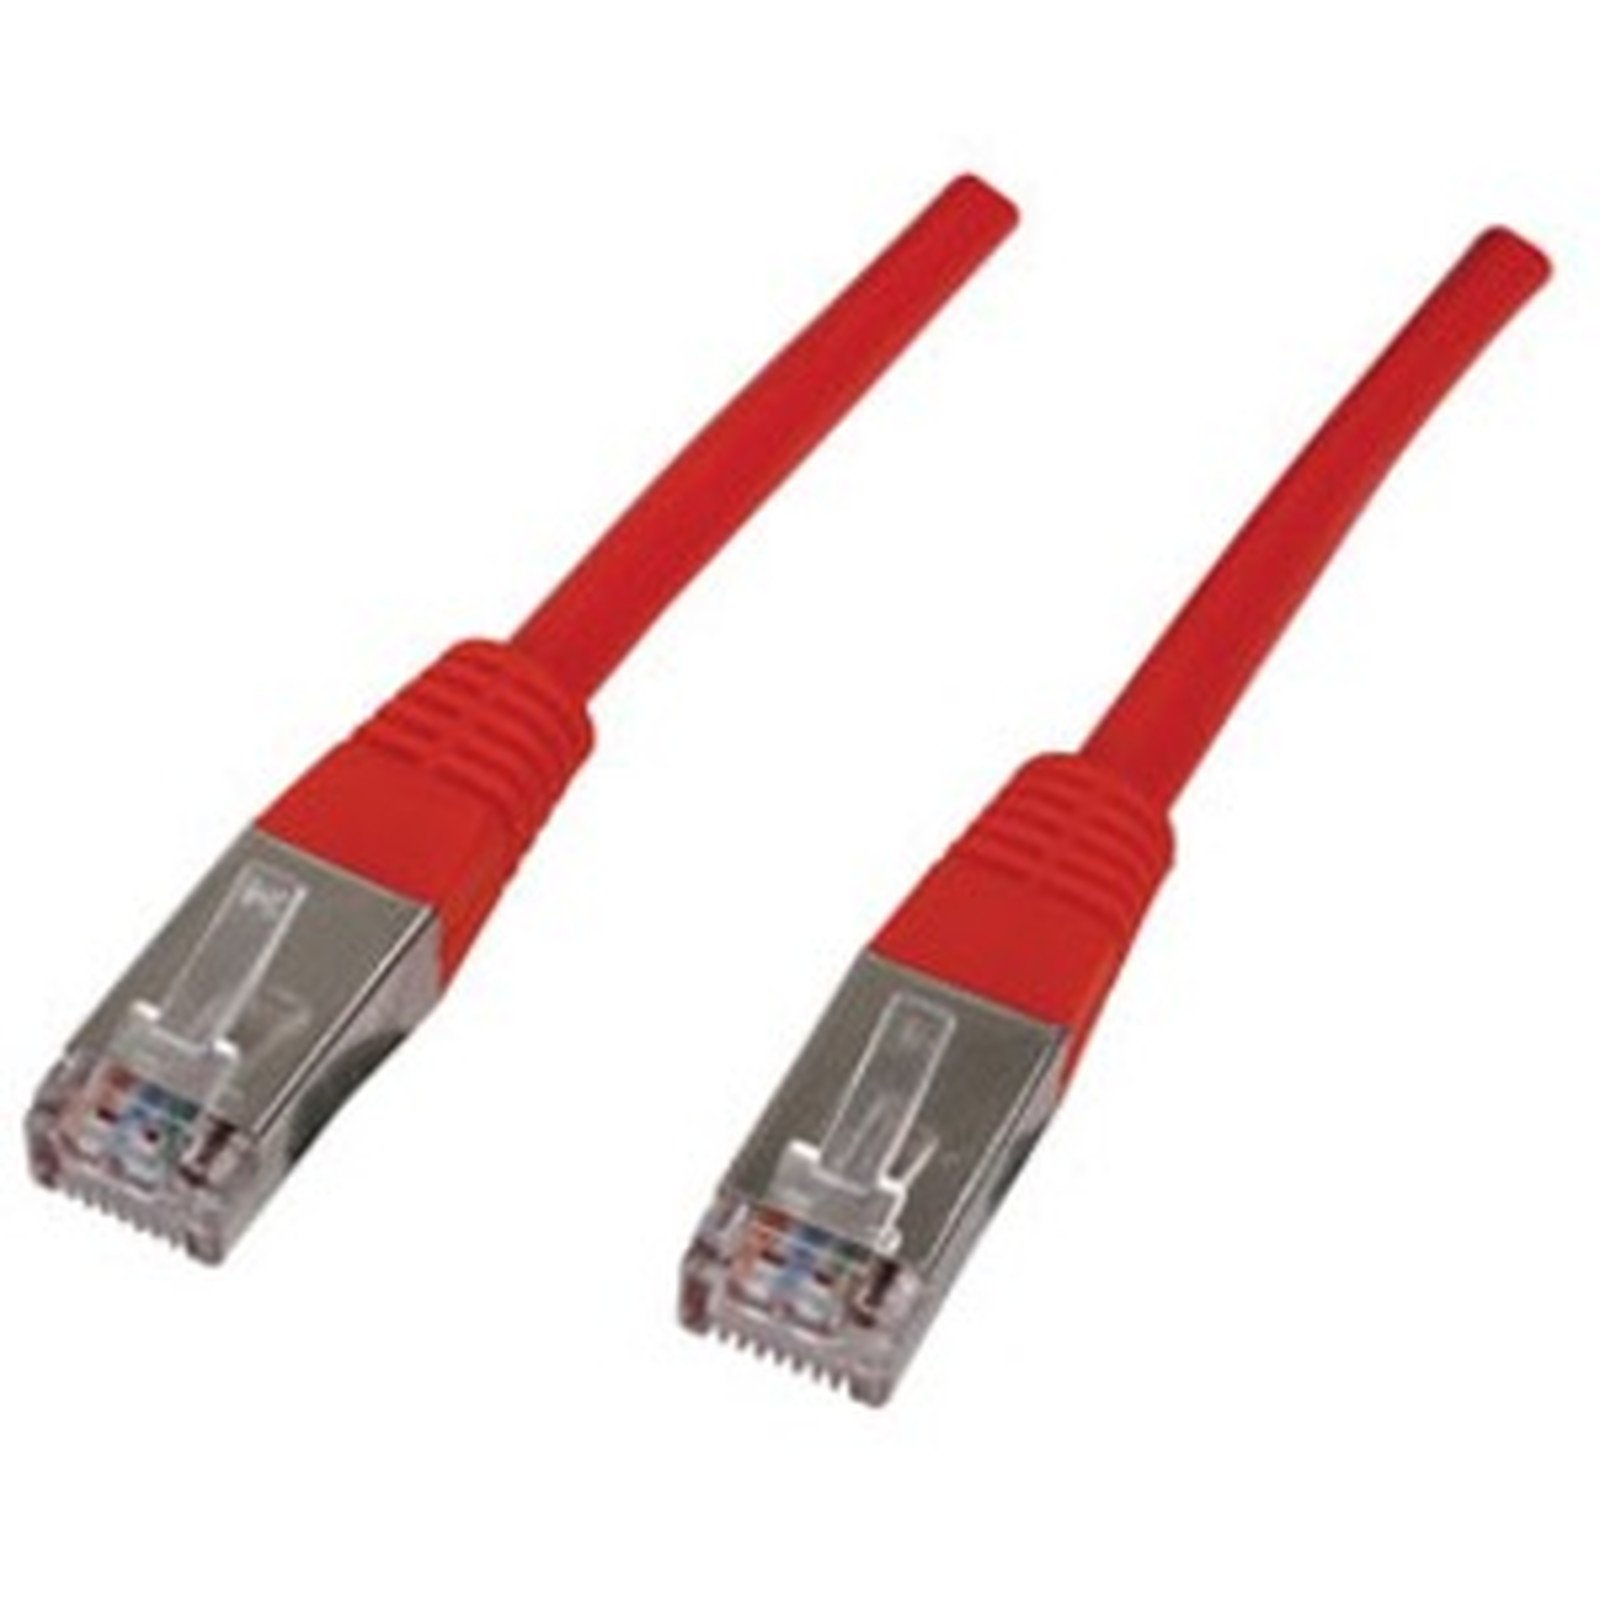 Cable RJ45 categorie 6 F/UTP 5 m (Rouge) - Cable RJ45 Generique